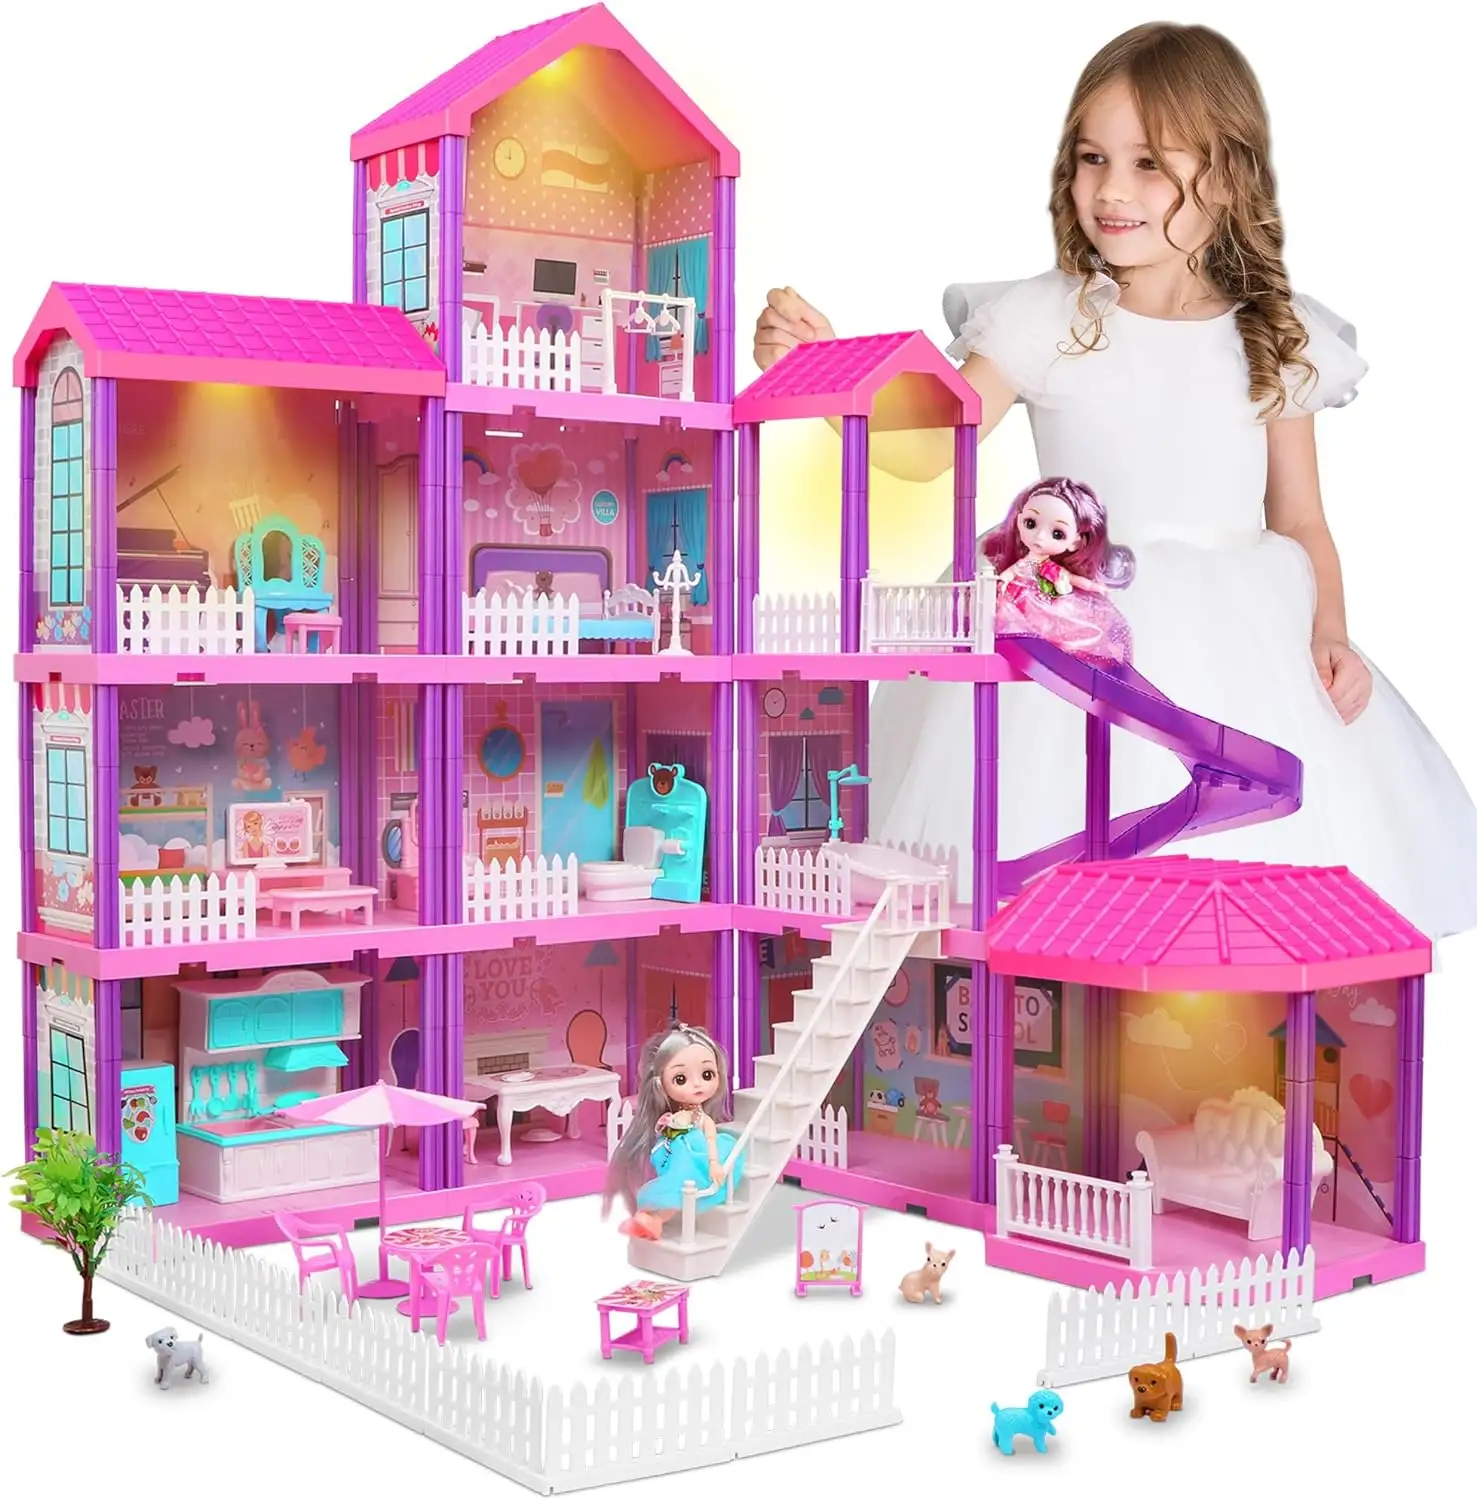 لعبة زينة الأميرة للفتاة ، أثاث سهل التركيب ، منزل دمية وردي للحلم بحجم كبير من البلاستيك مع دمية صبي وفتاة